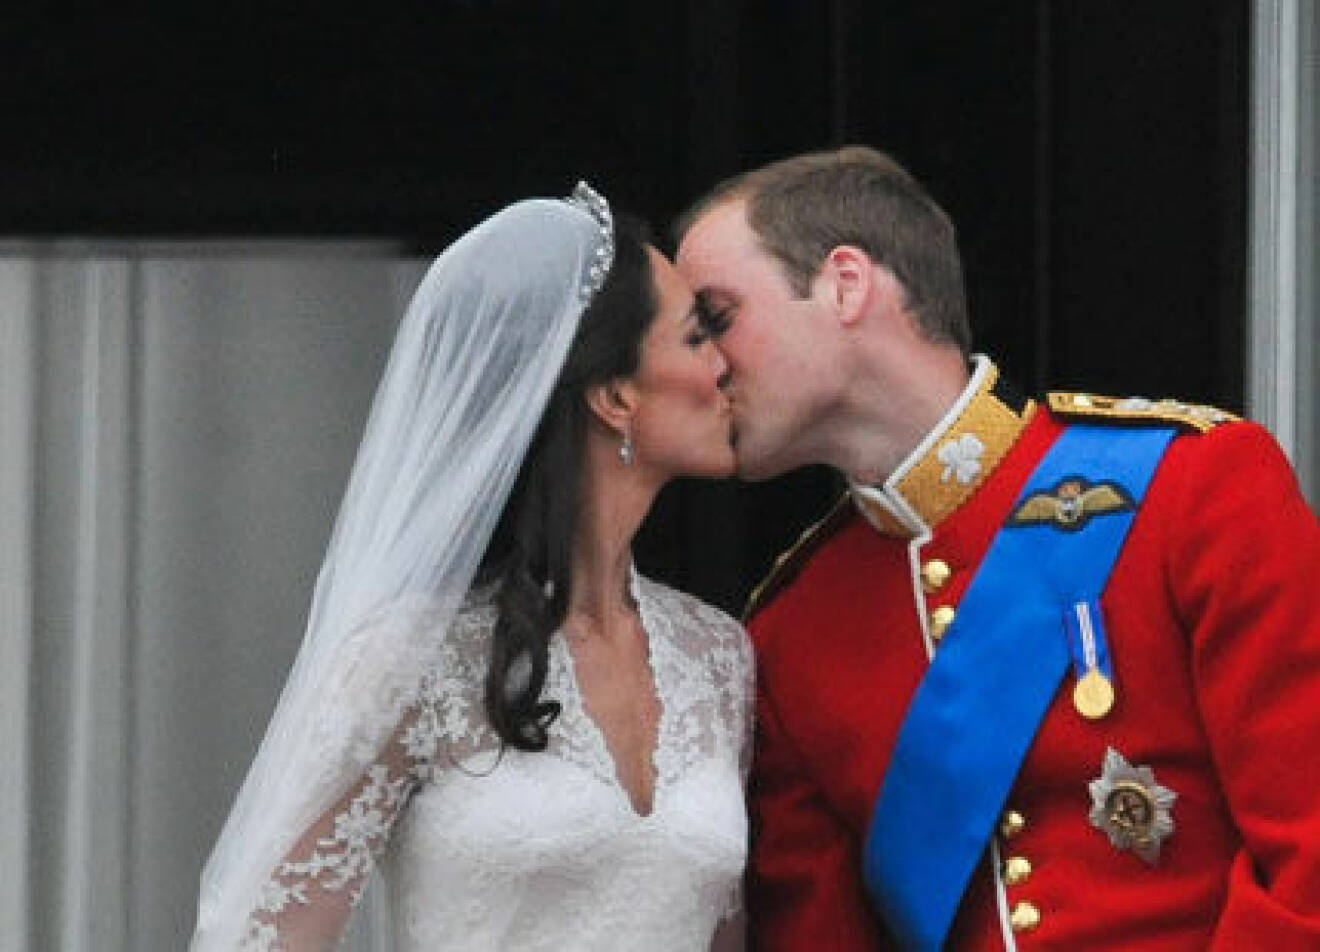 Bröllopskyssen mellan prins William och Kate